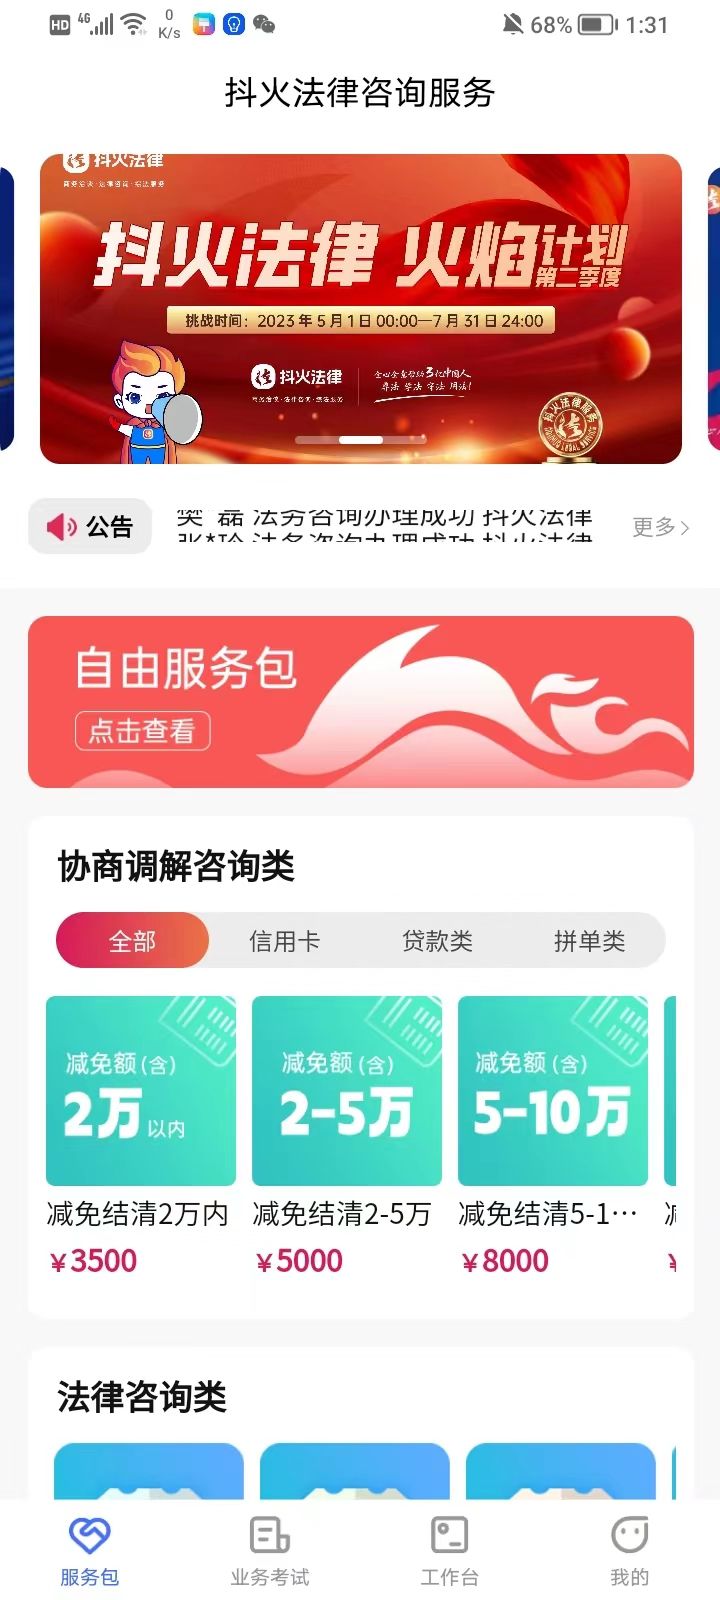 抖火数字化咨询服务平台官方app图片1